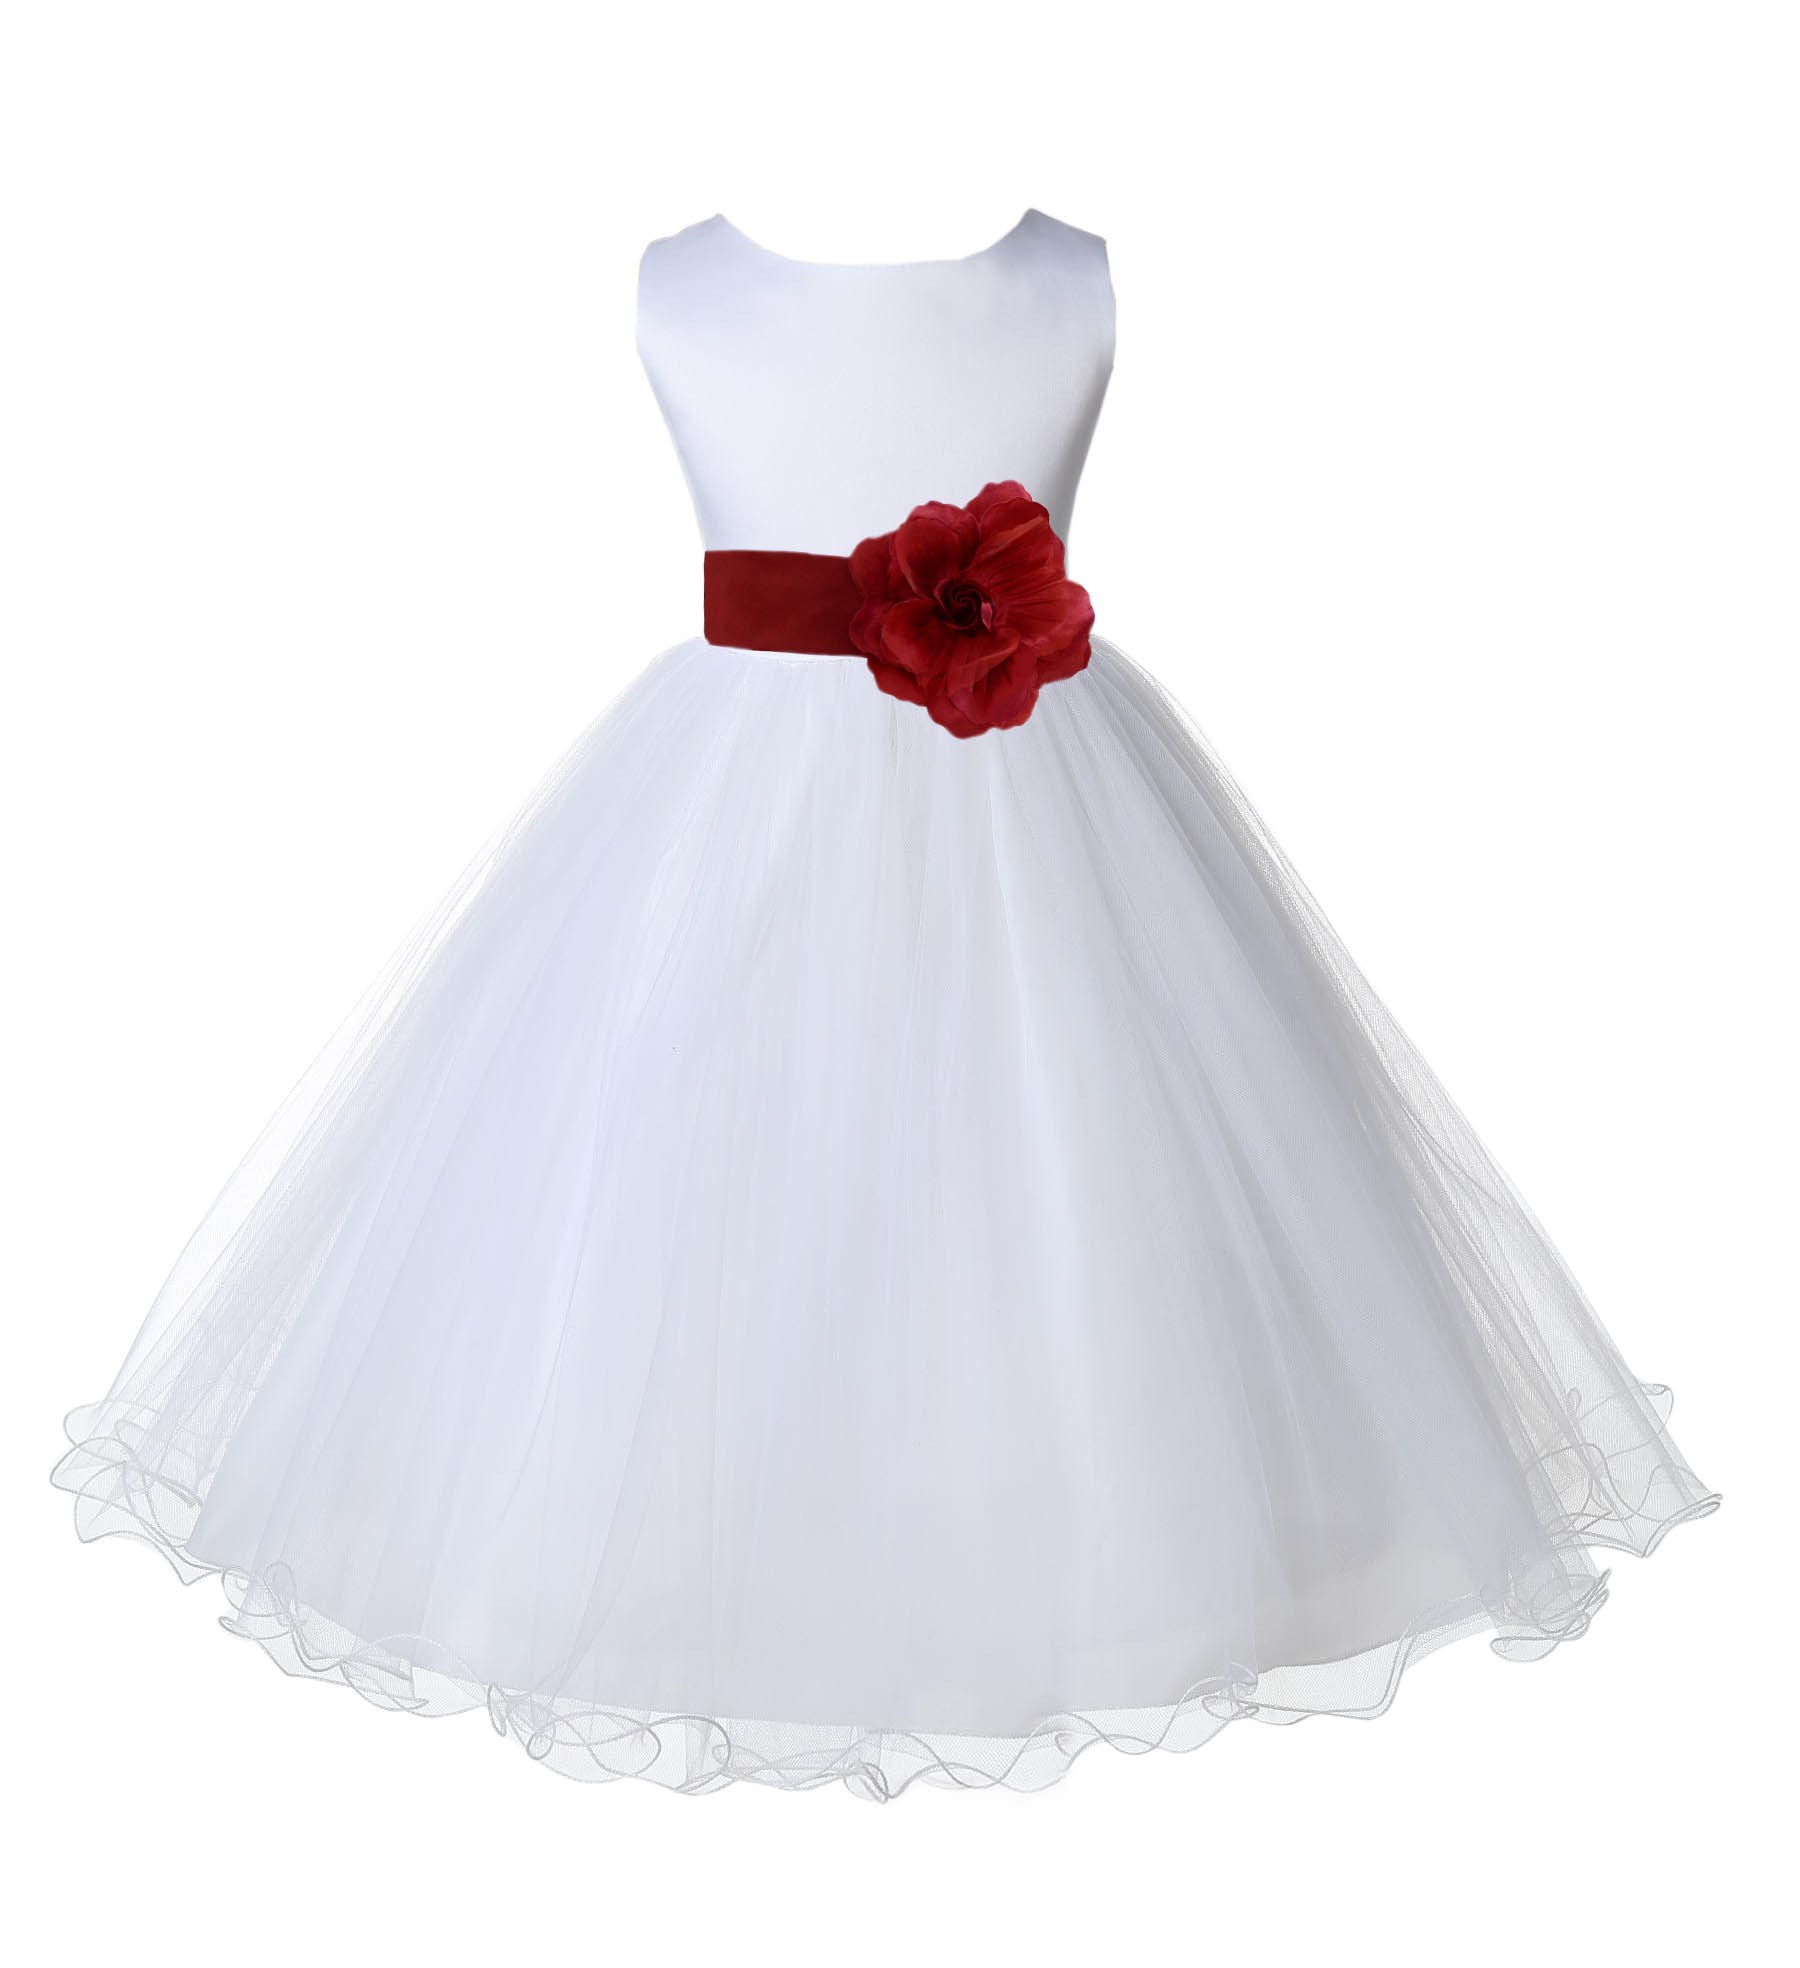 White/Apple Red Tulle Rattail Edge Flower Girl Dress Wedding Bridal 829S